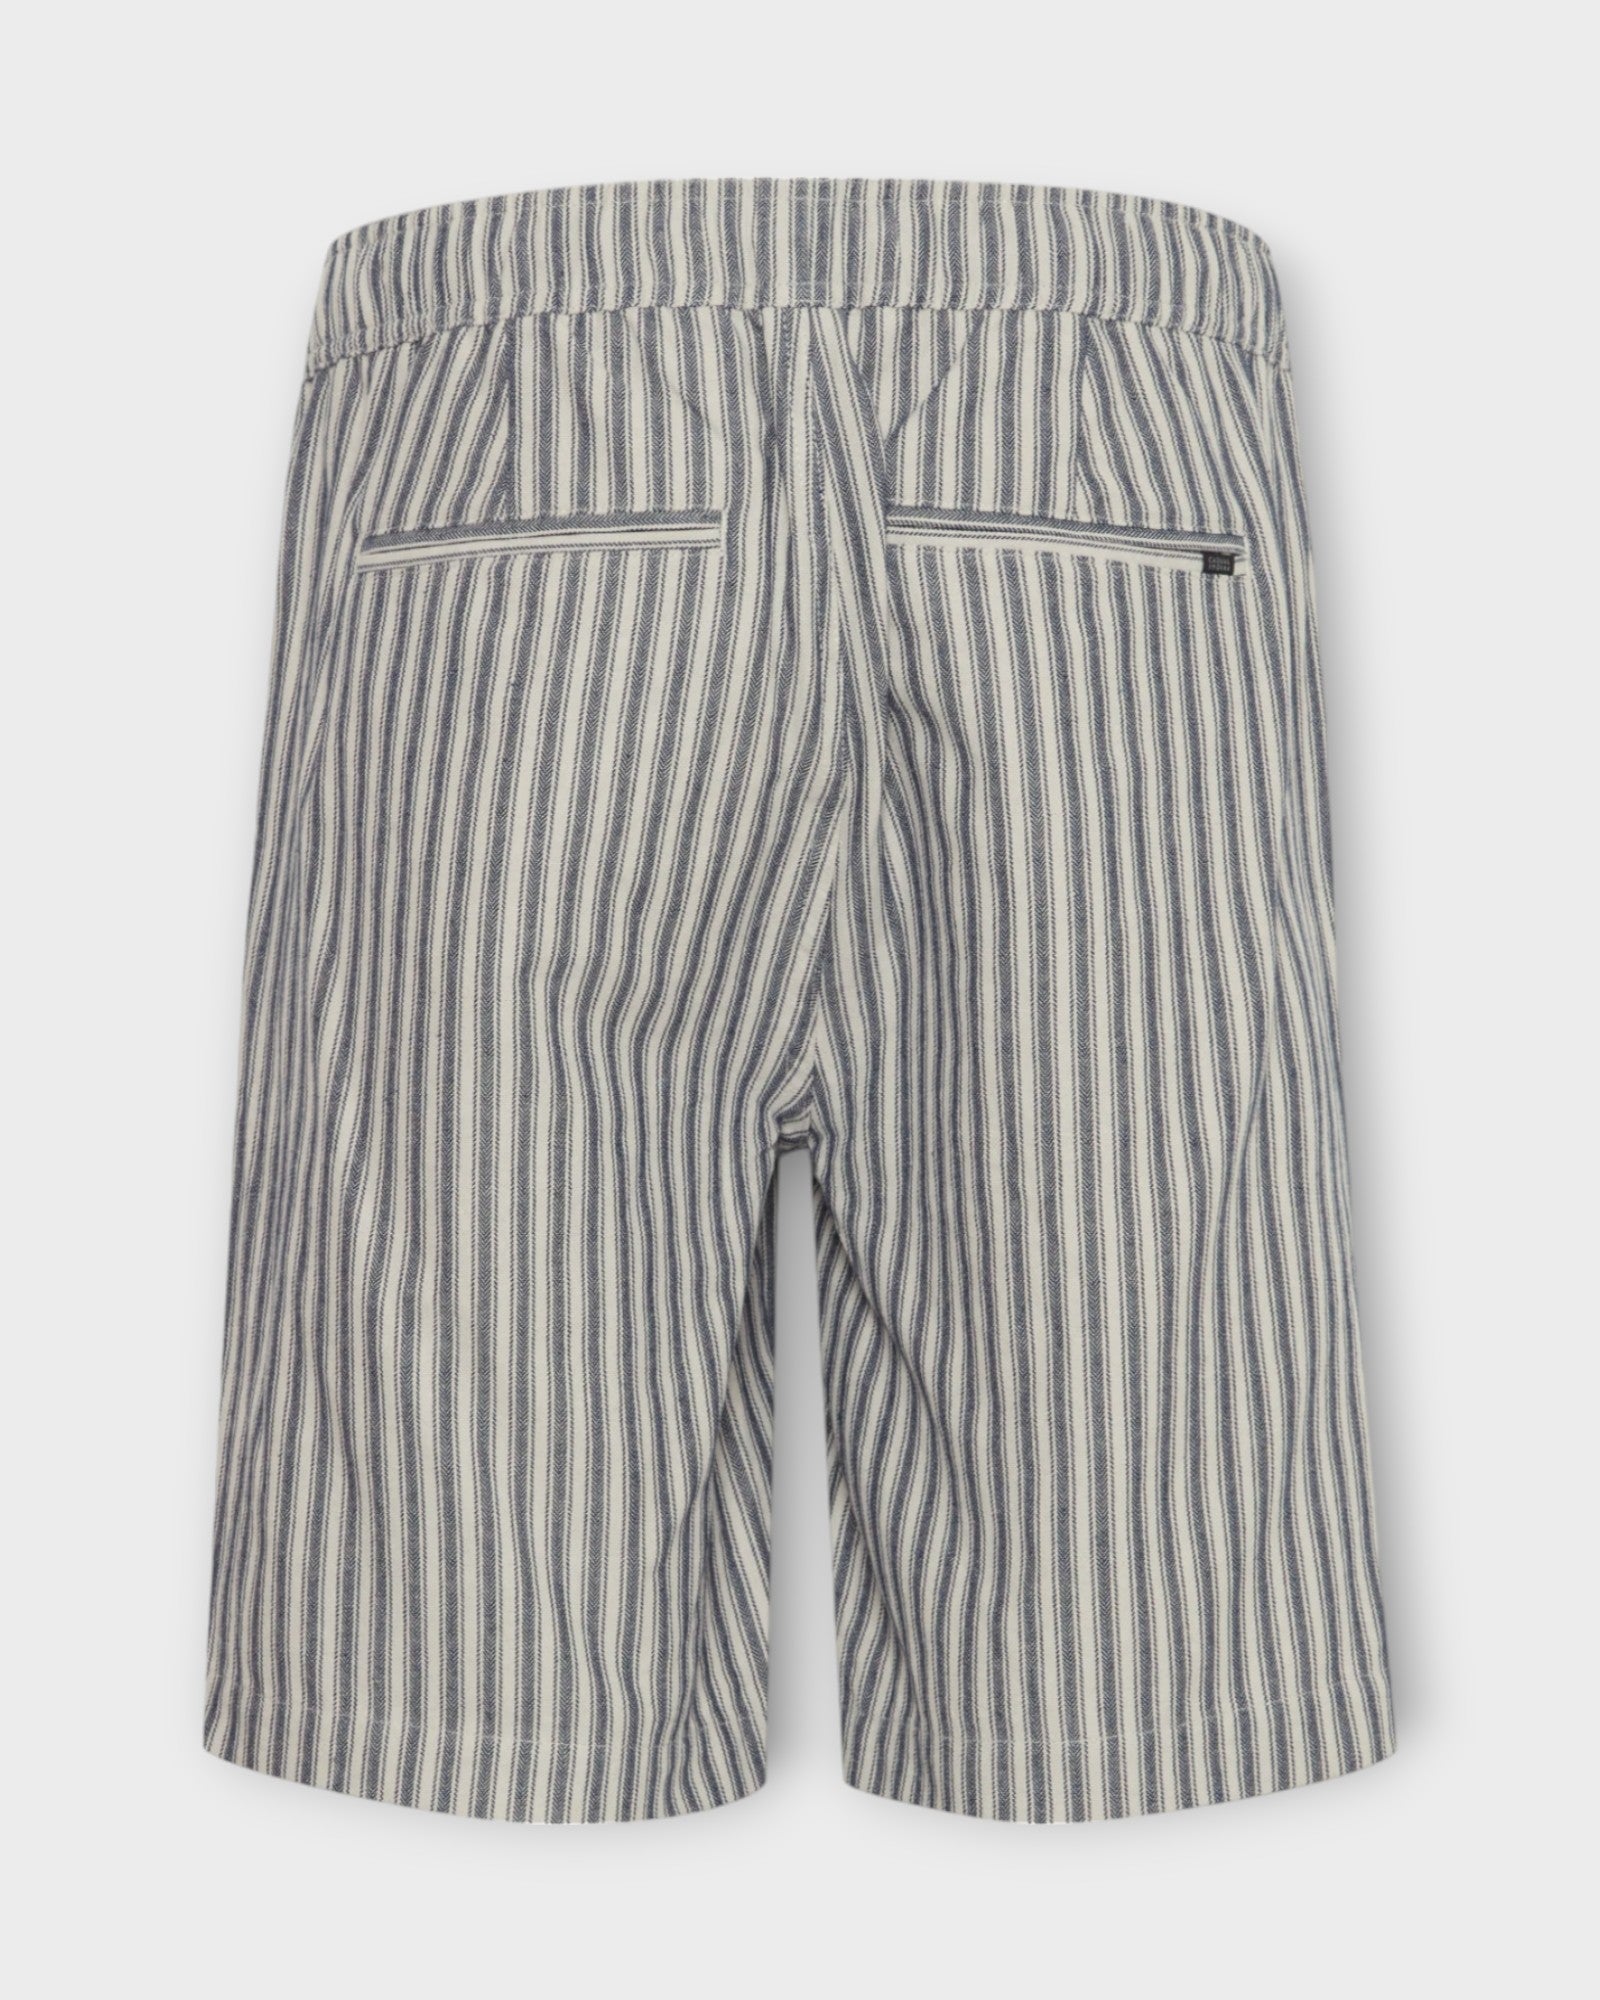 Phelix Striped Shorts  Dark Navy, et par stribet Casual Friday hør shorts til mænd. Regular fit med snører og elastik i livet. Her set bagfra.